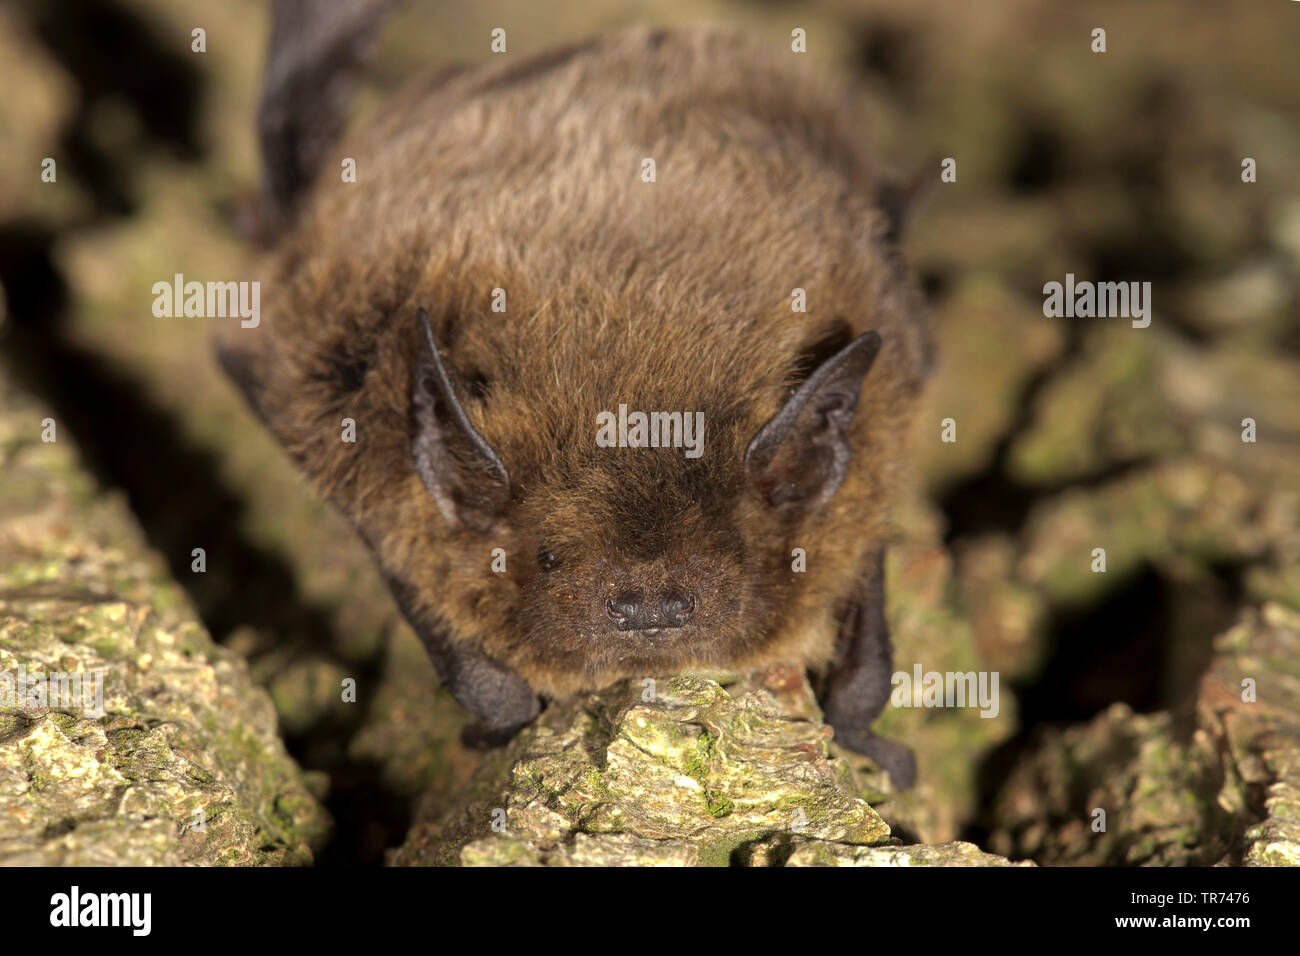 Nathusius' pipistrelle (Pipistrellus nathusii), on bark, Netherlands Stock Photo